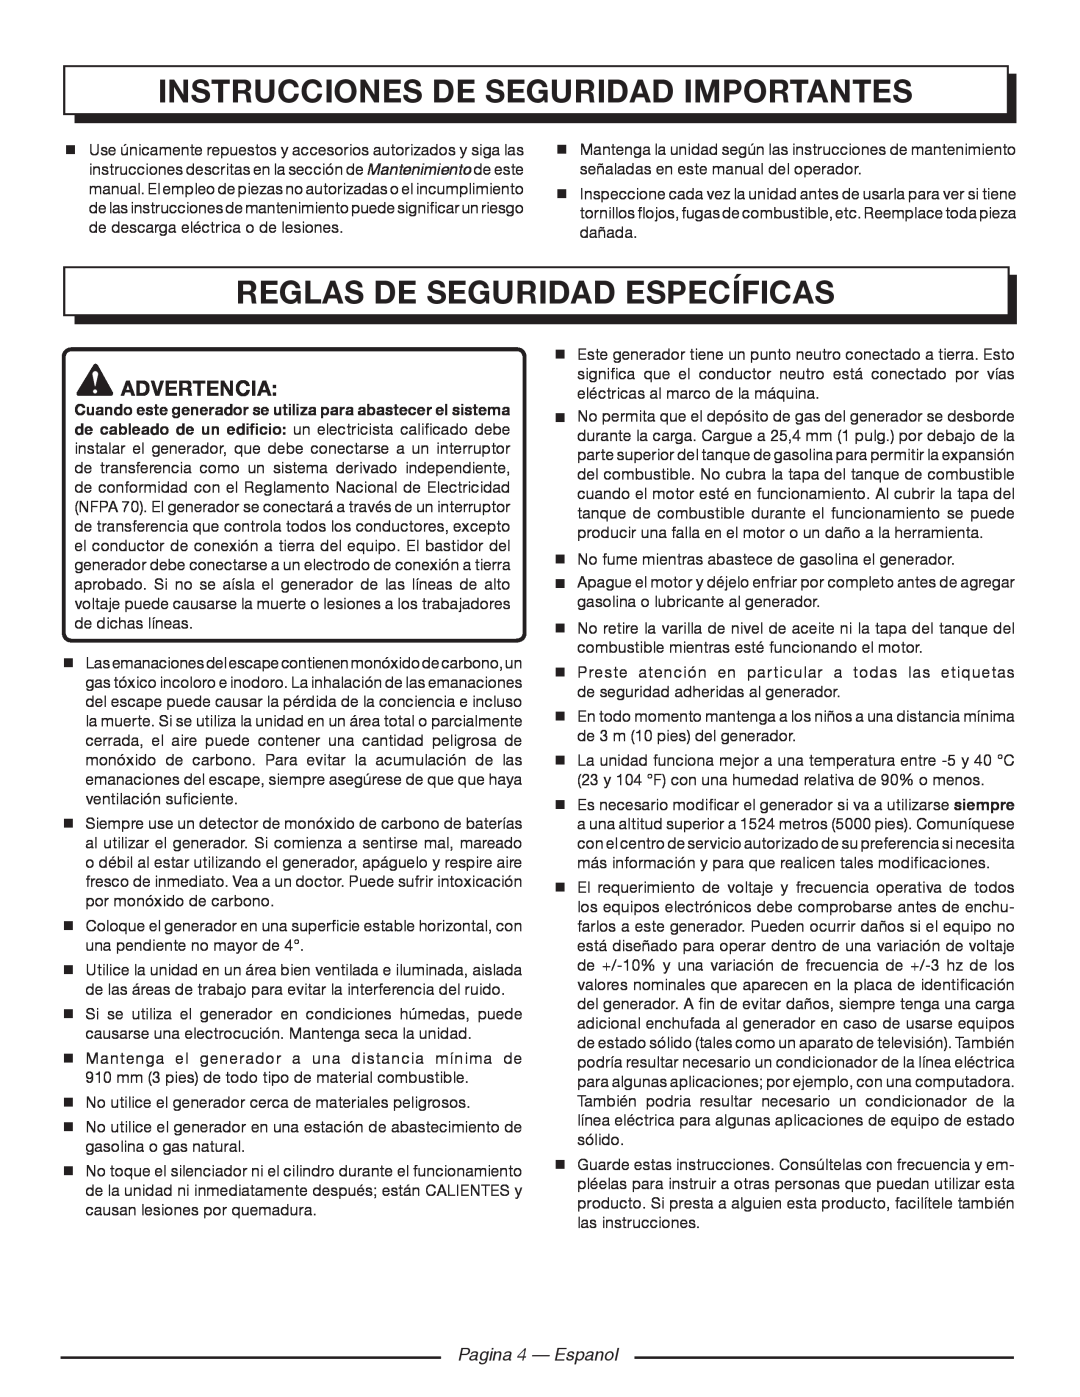 Homelite HGCA1400 Reglas de seguridad específicas, Instrucciones de seguridad importantes, Advertencia, Pagina 4 - Espanol 